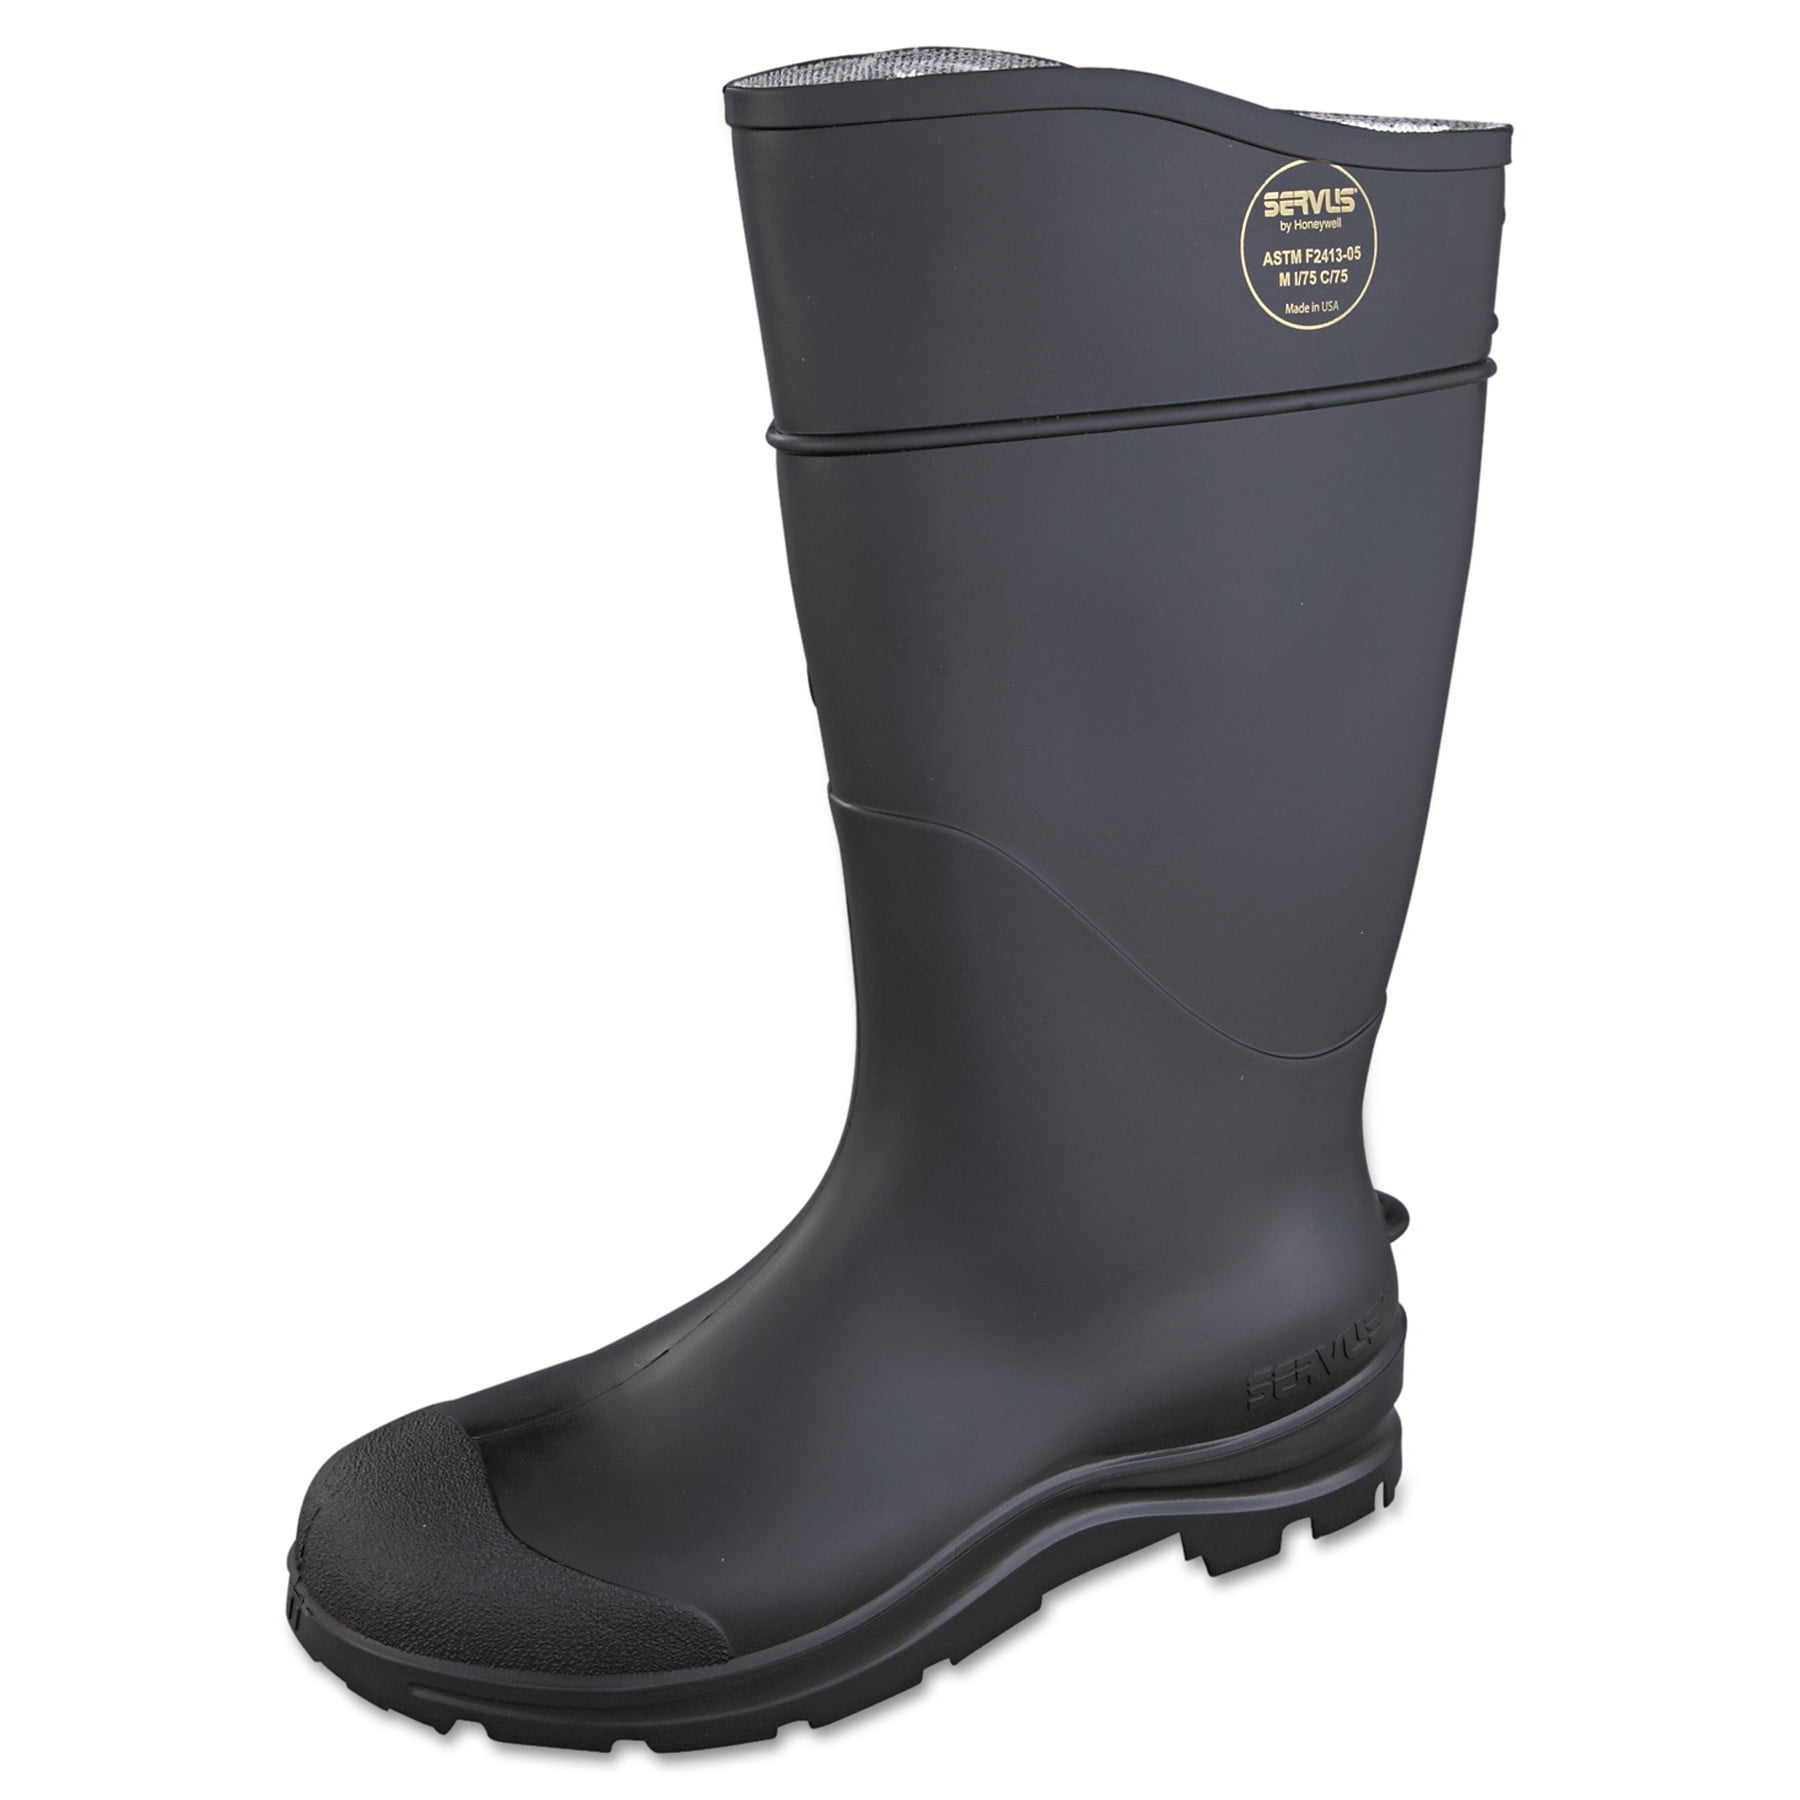 Men's Size 12 Servus Honeywell Overshoe 17" Yellow Waterproof Rubber Boots NWT 